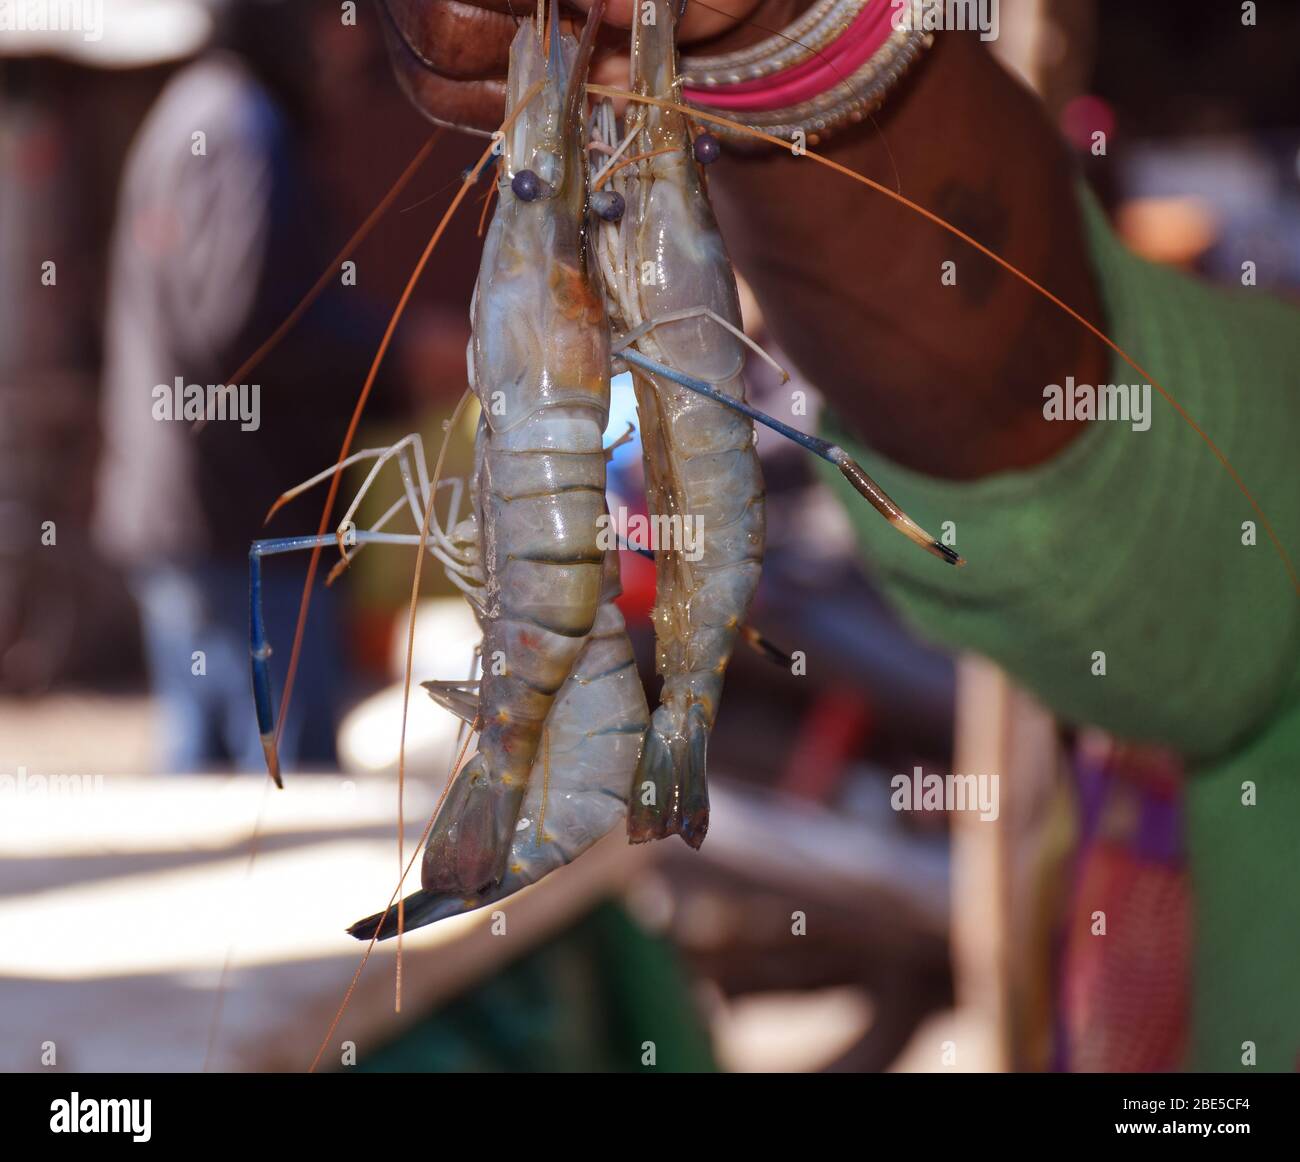 Ein indischer Fischverkäufer, der auf einem Fischmarkt in Westbengalen Indien Tiger Garnelen zeigt oder in der Nähe davon steht Stockfoto